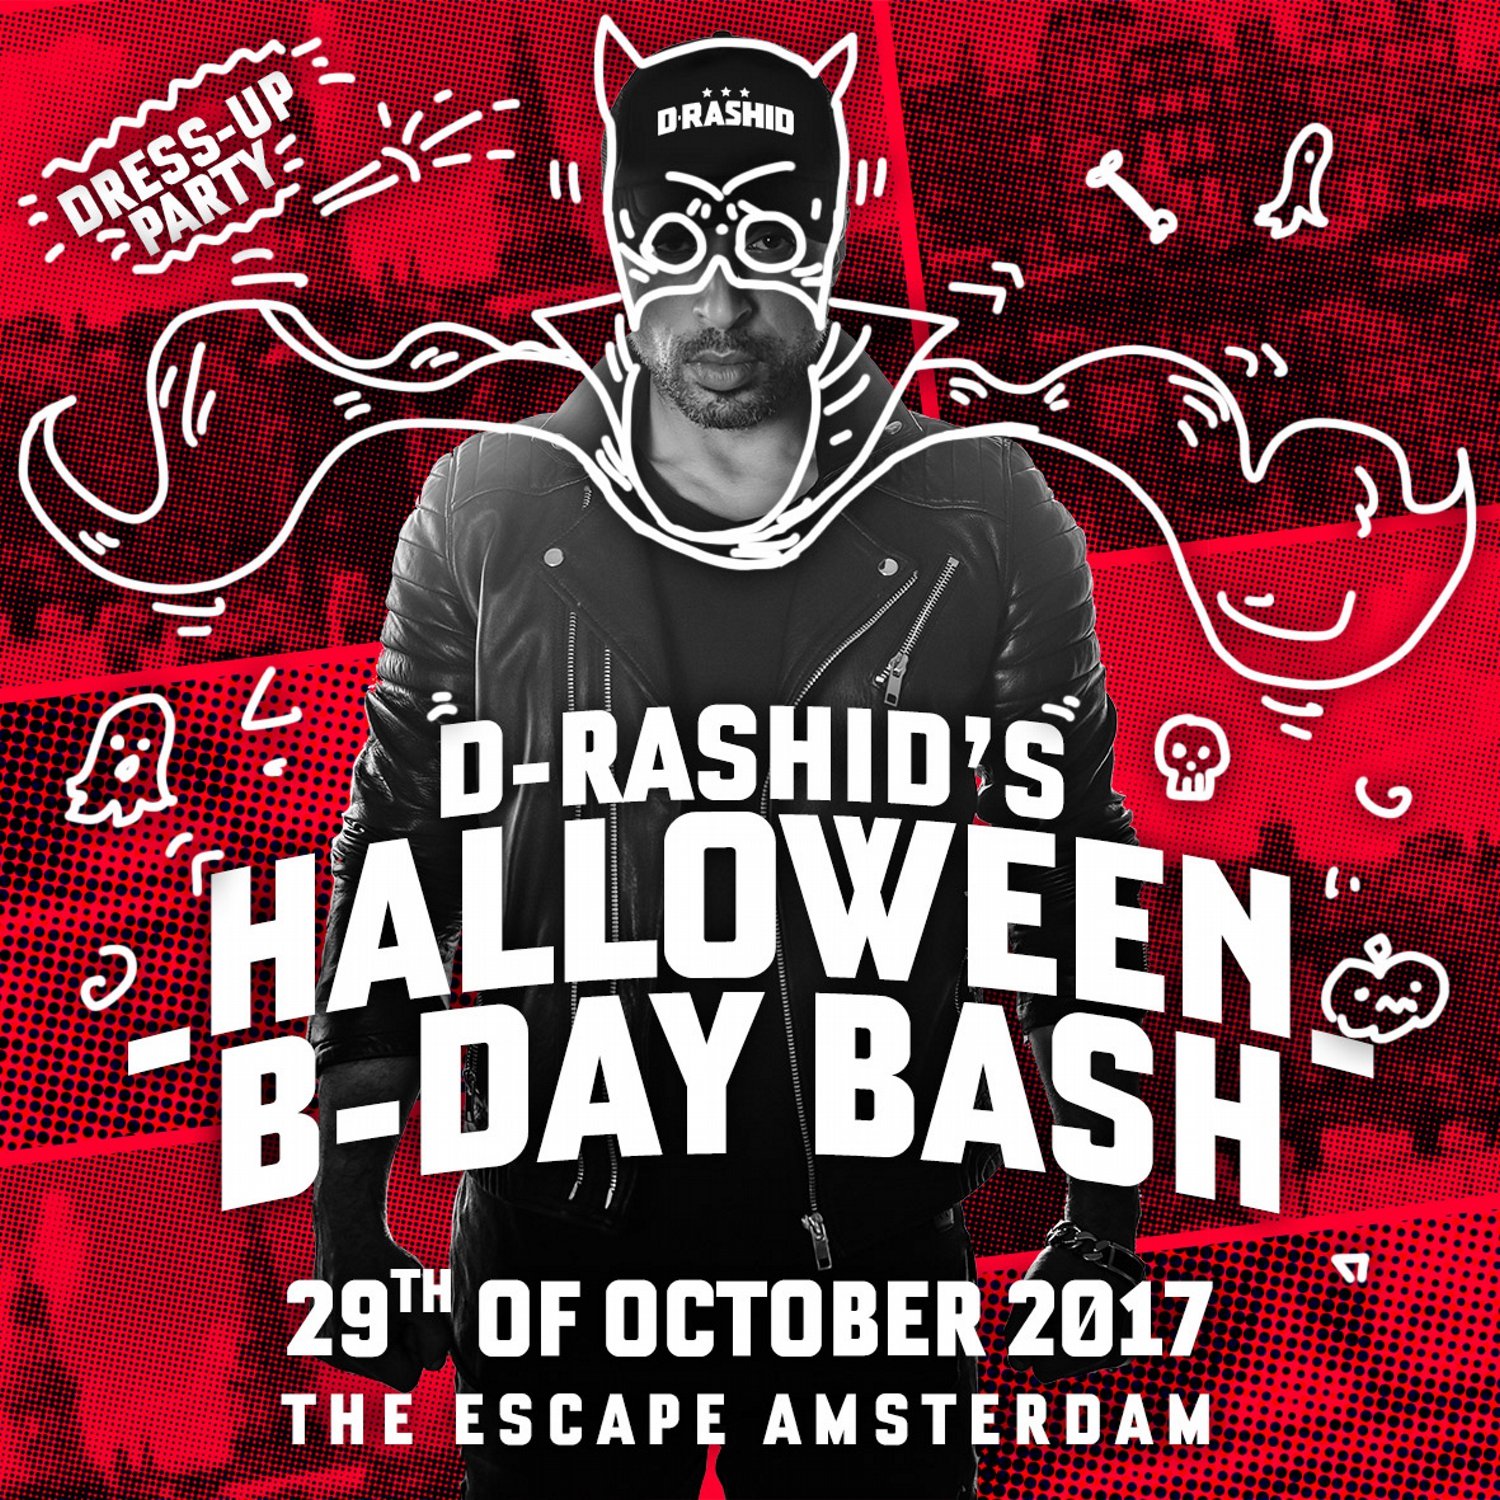 D-Rashid's Halloween B-Day Bash